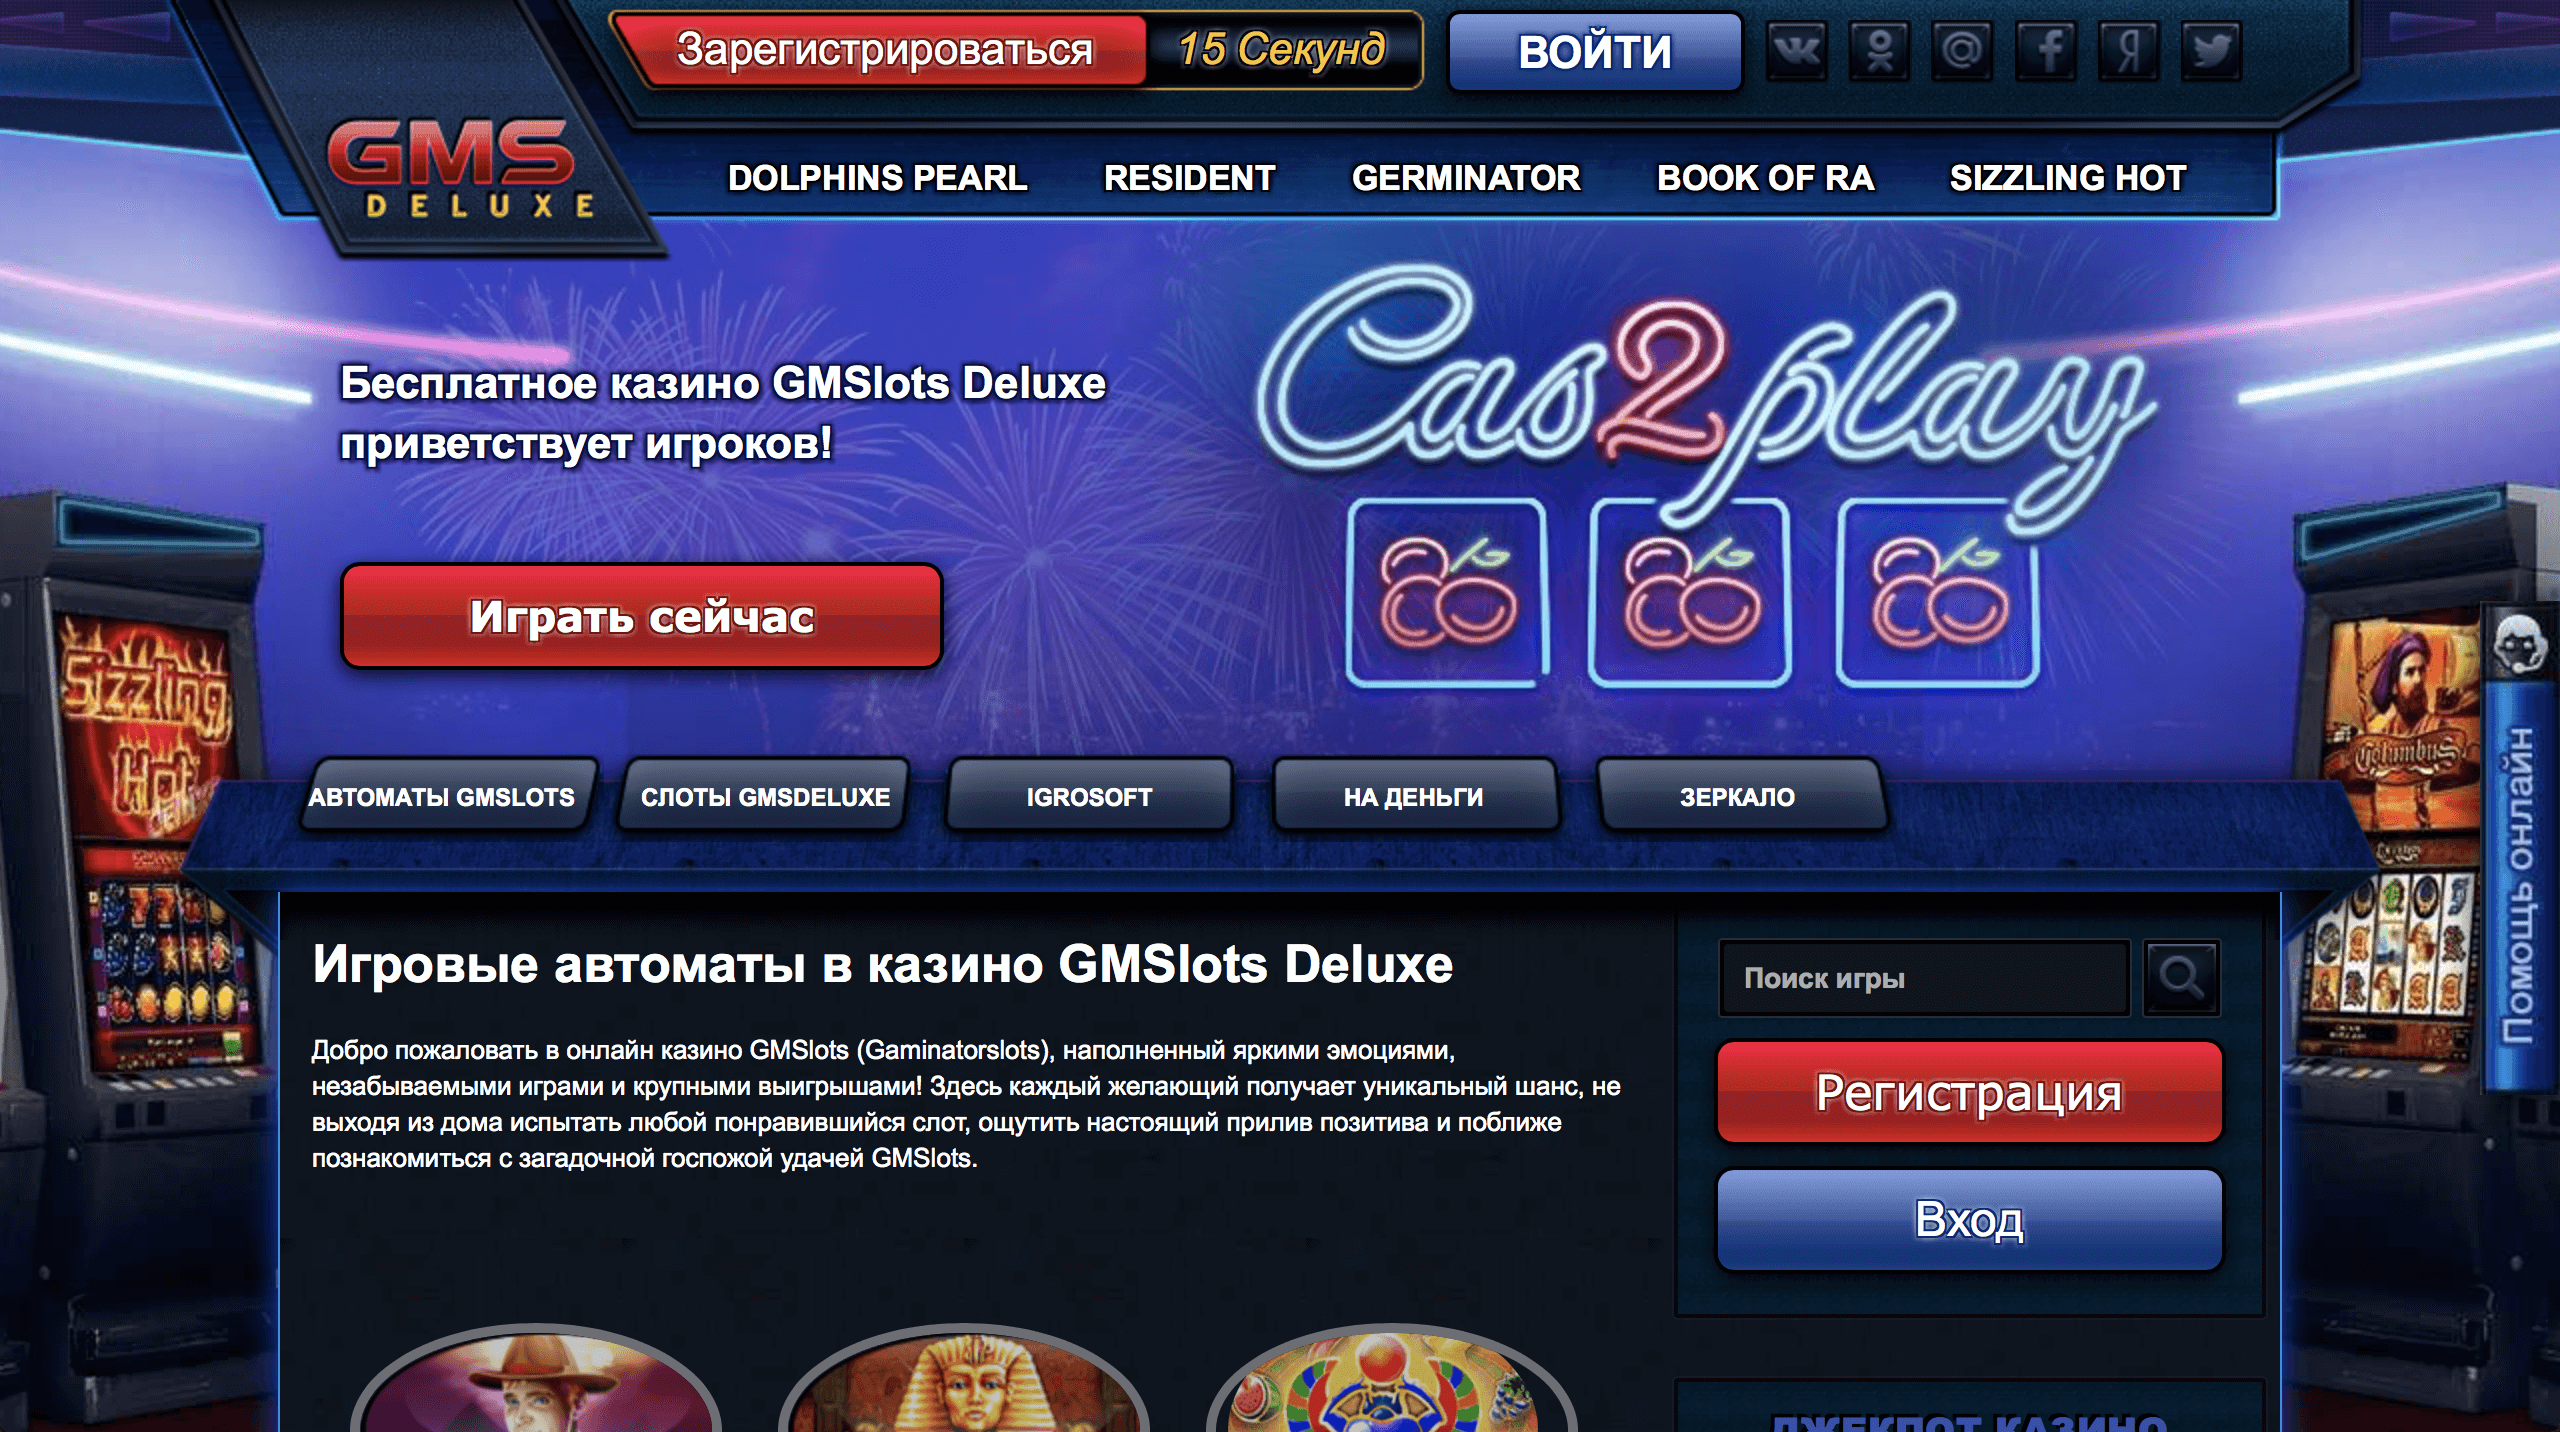 Online casino ranking thread игровые автоматы играть бесплатно и без регистрации свиньи онлайн